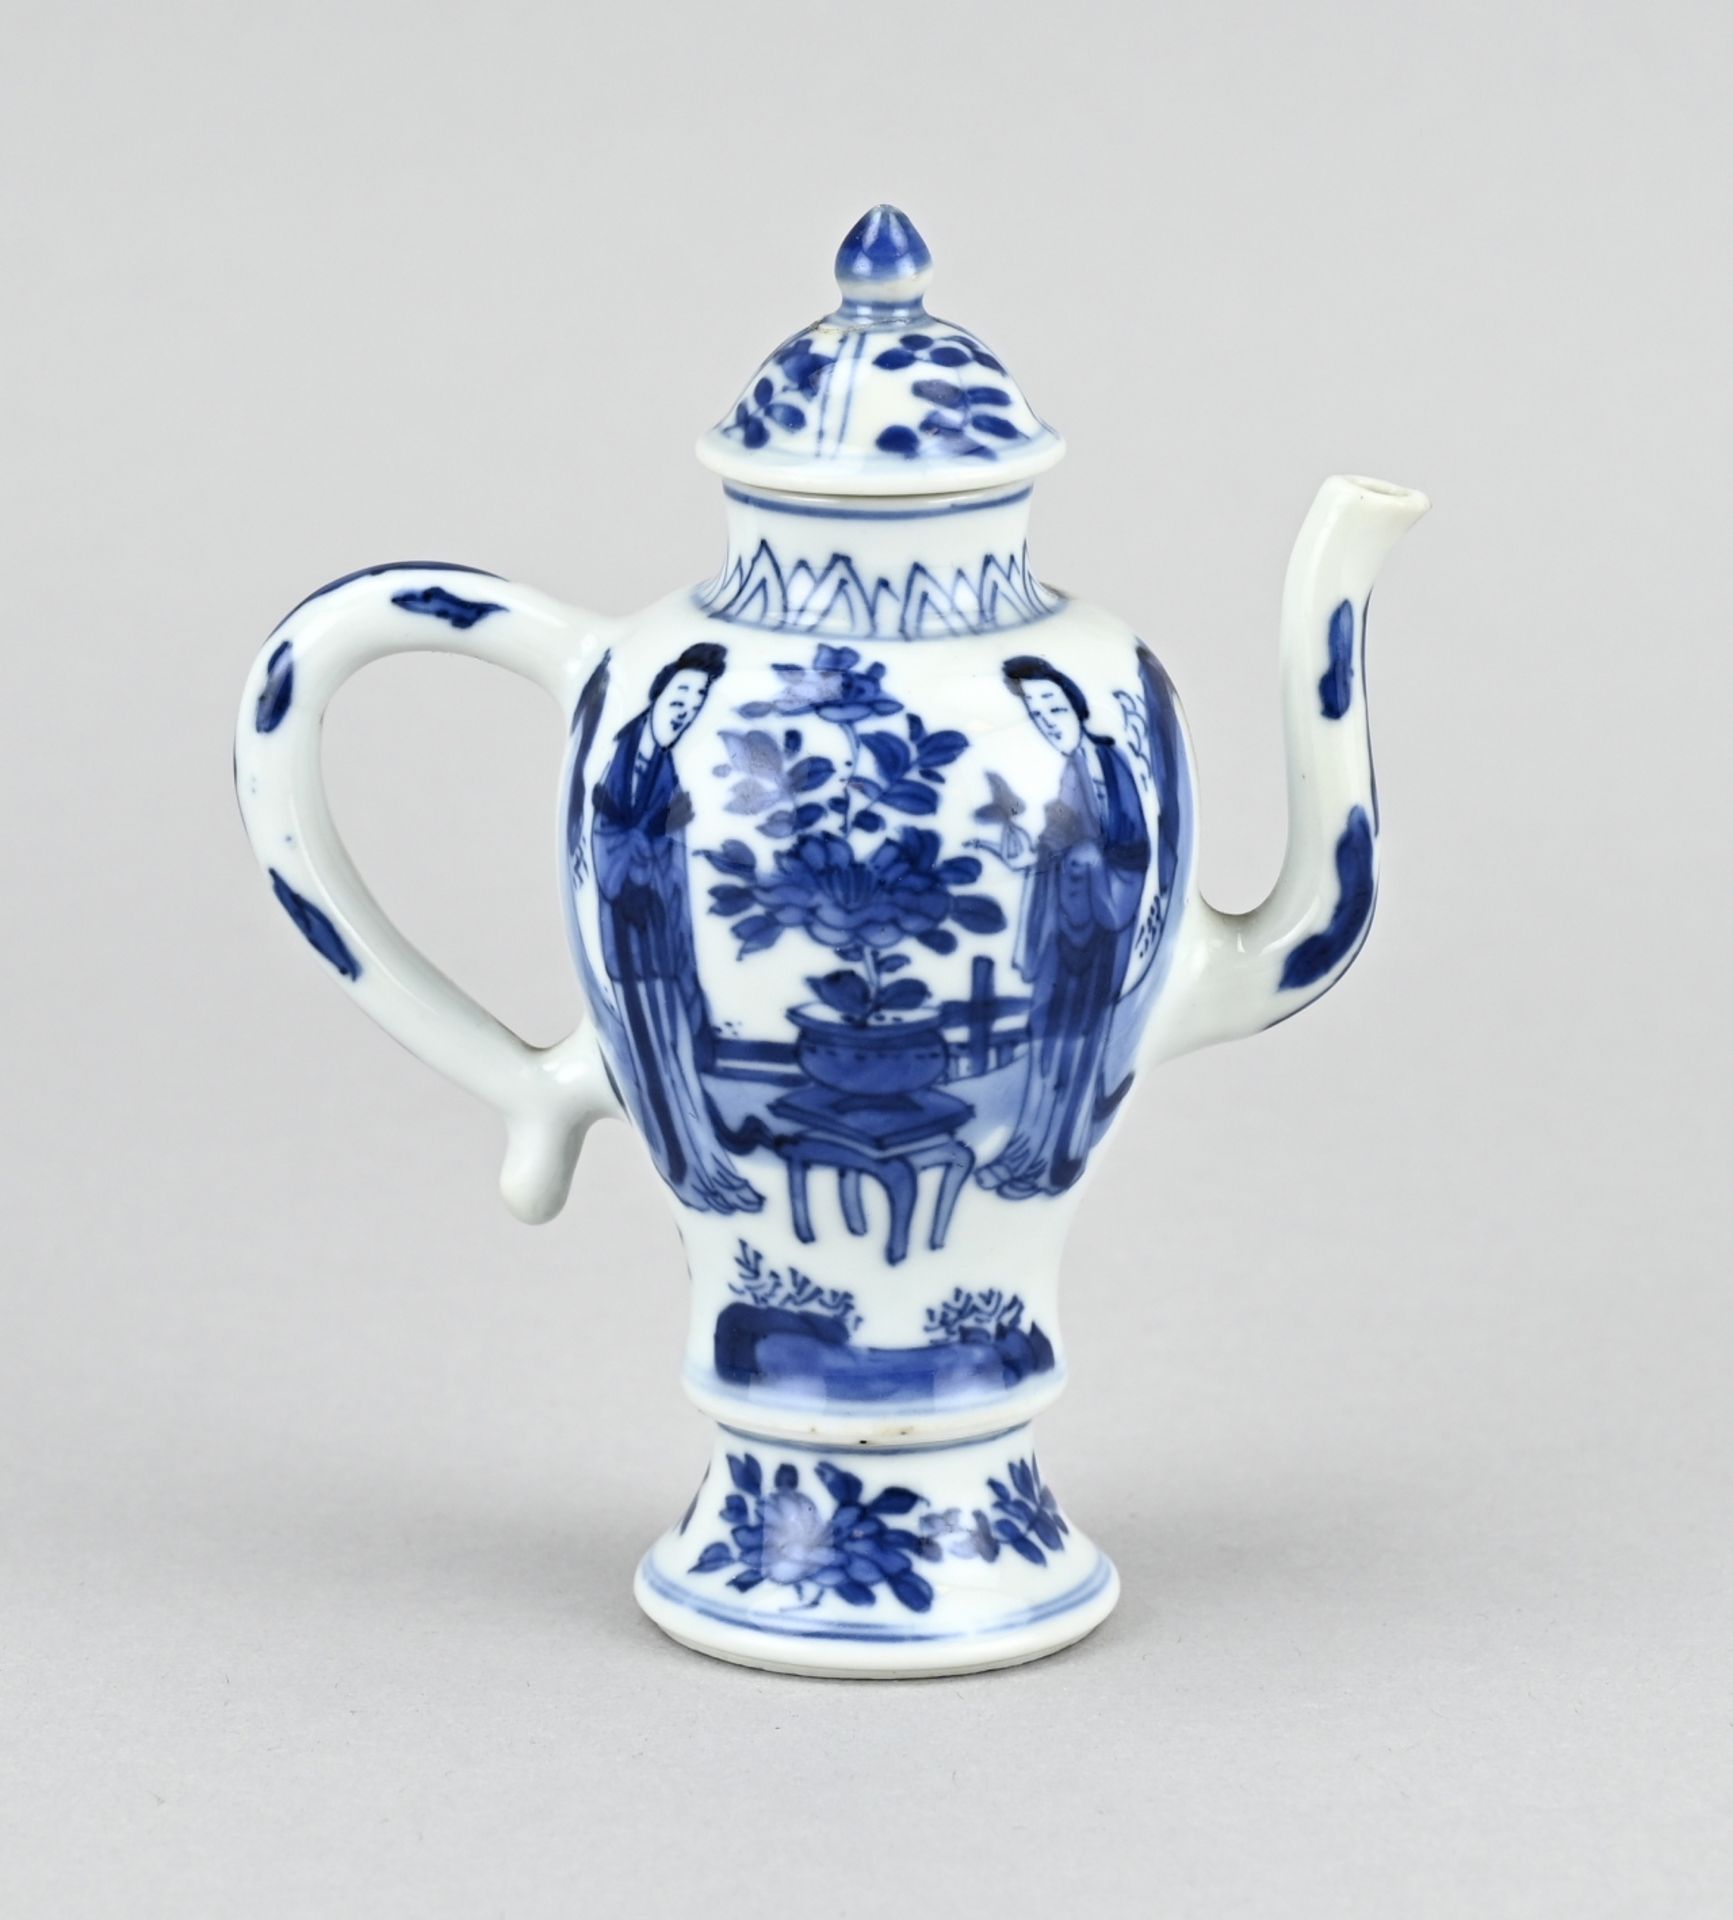 Chinese jug